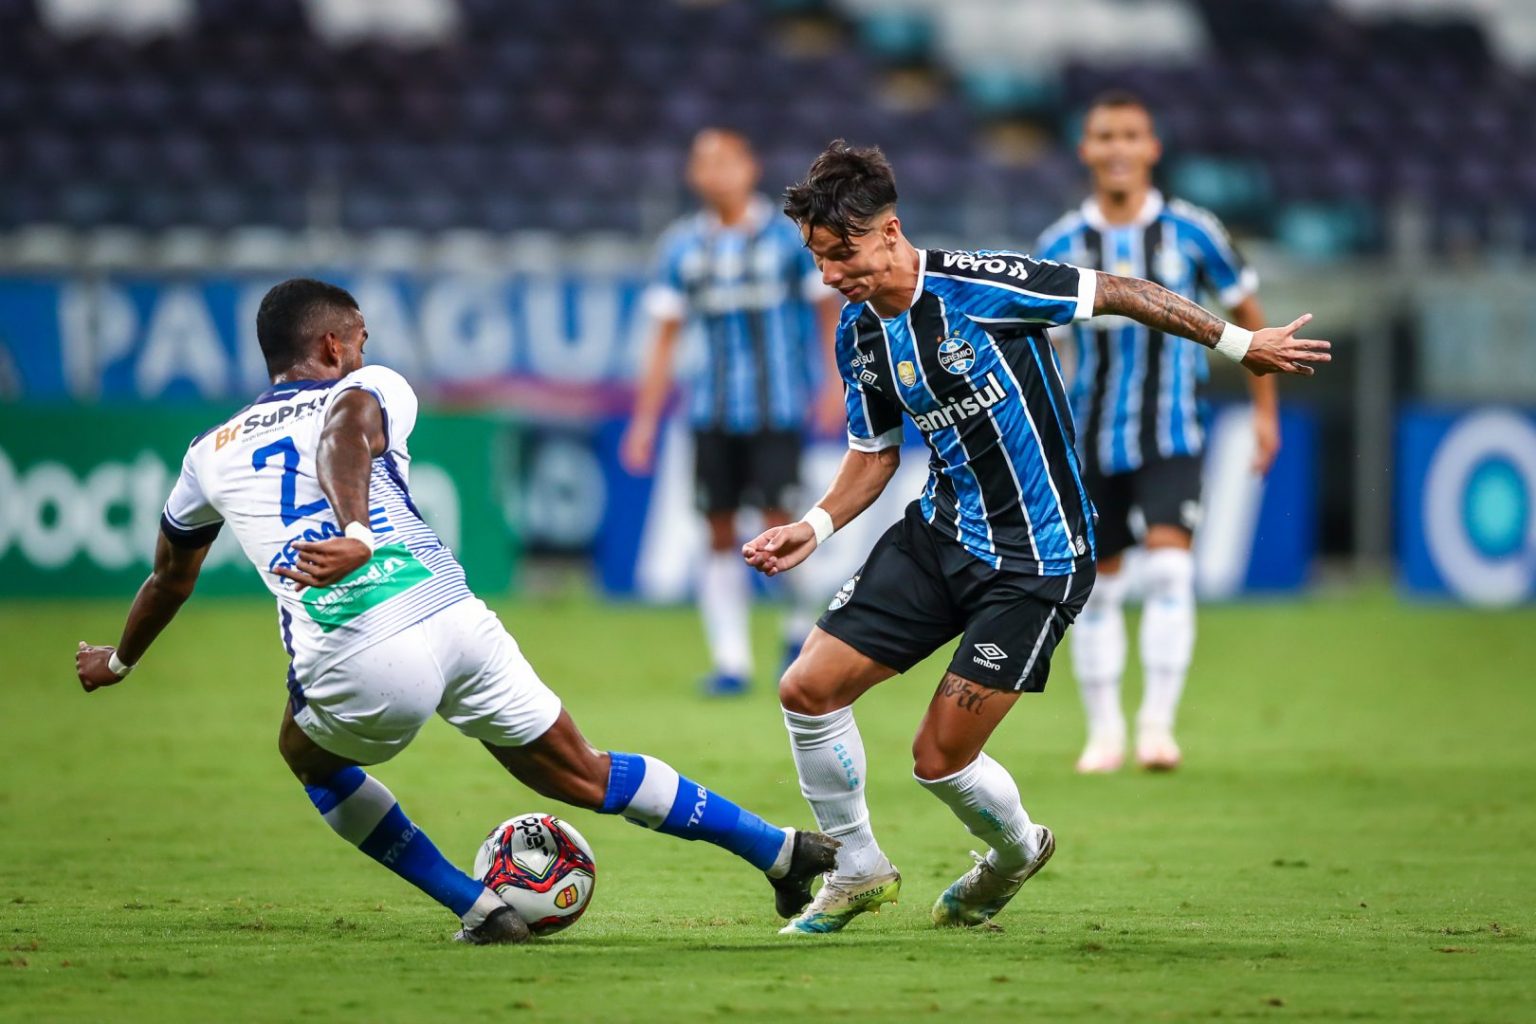 Grêmio vs ABC: A Clash of Titans in Brazilian Football